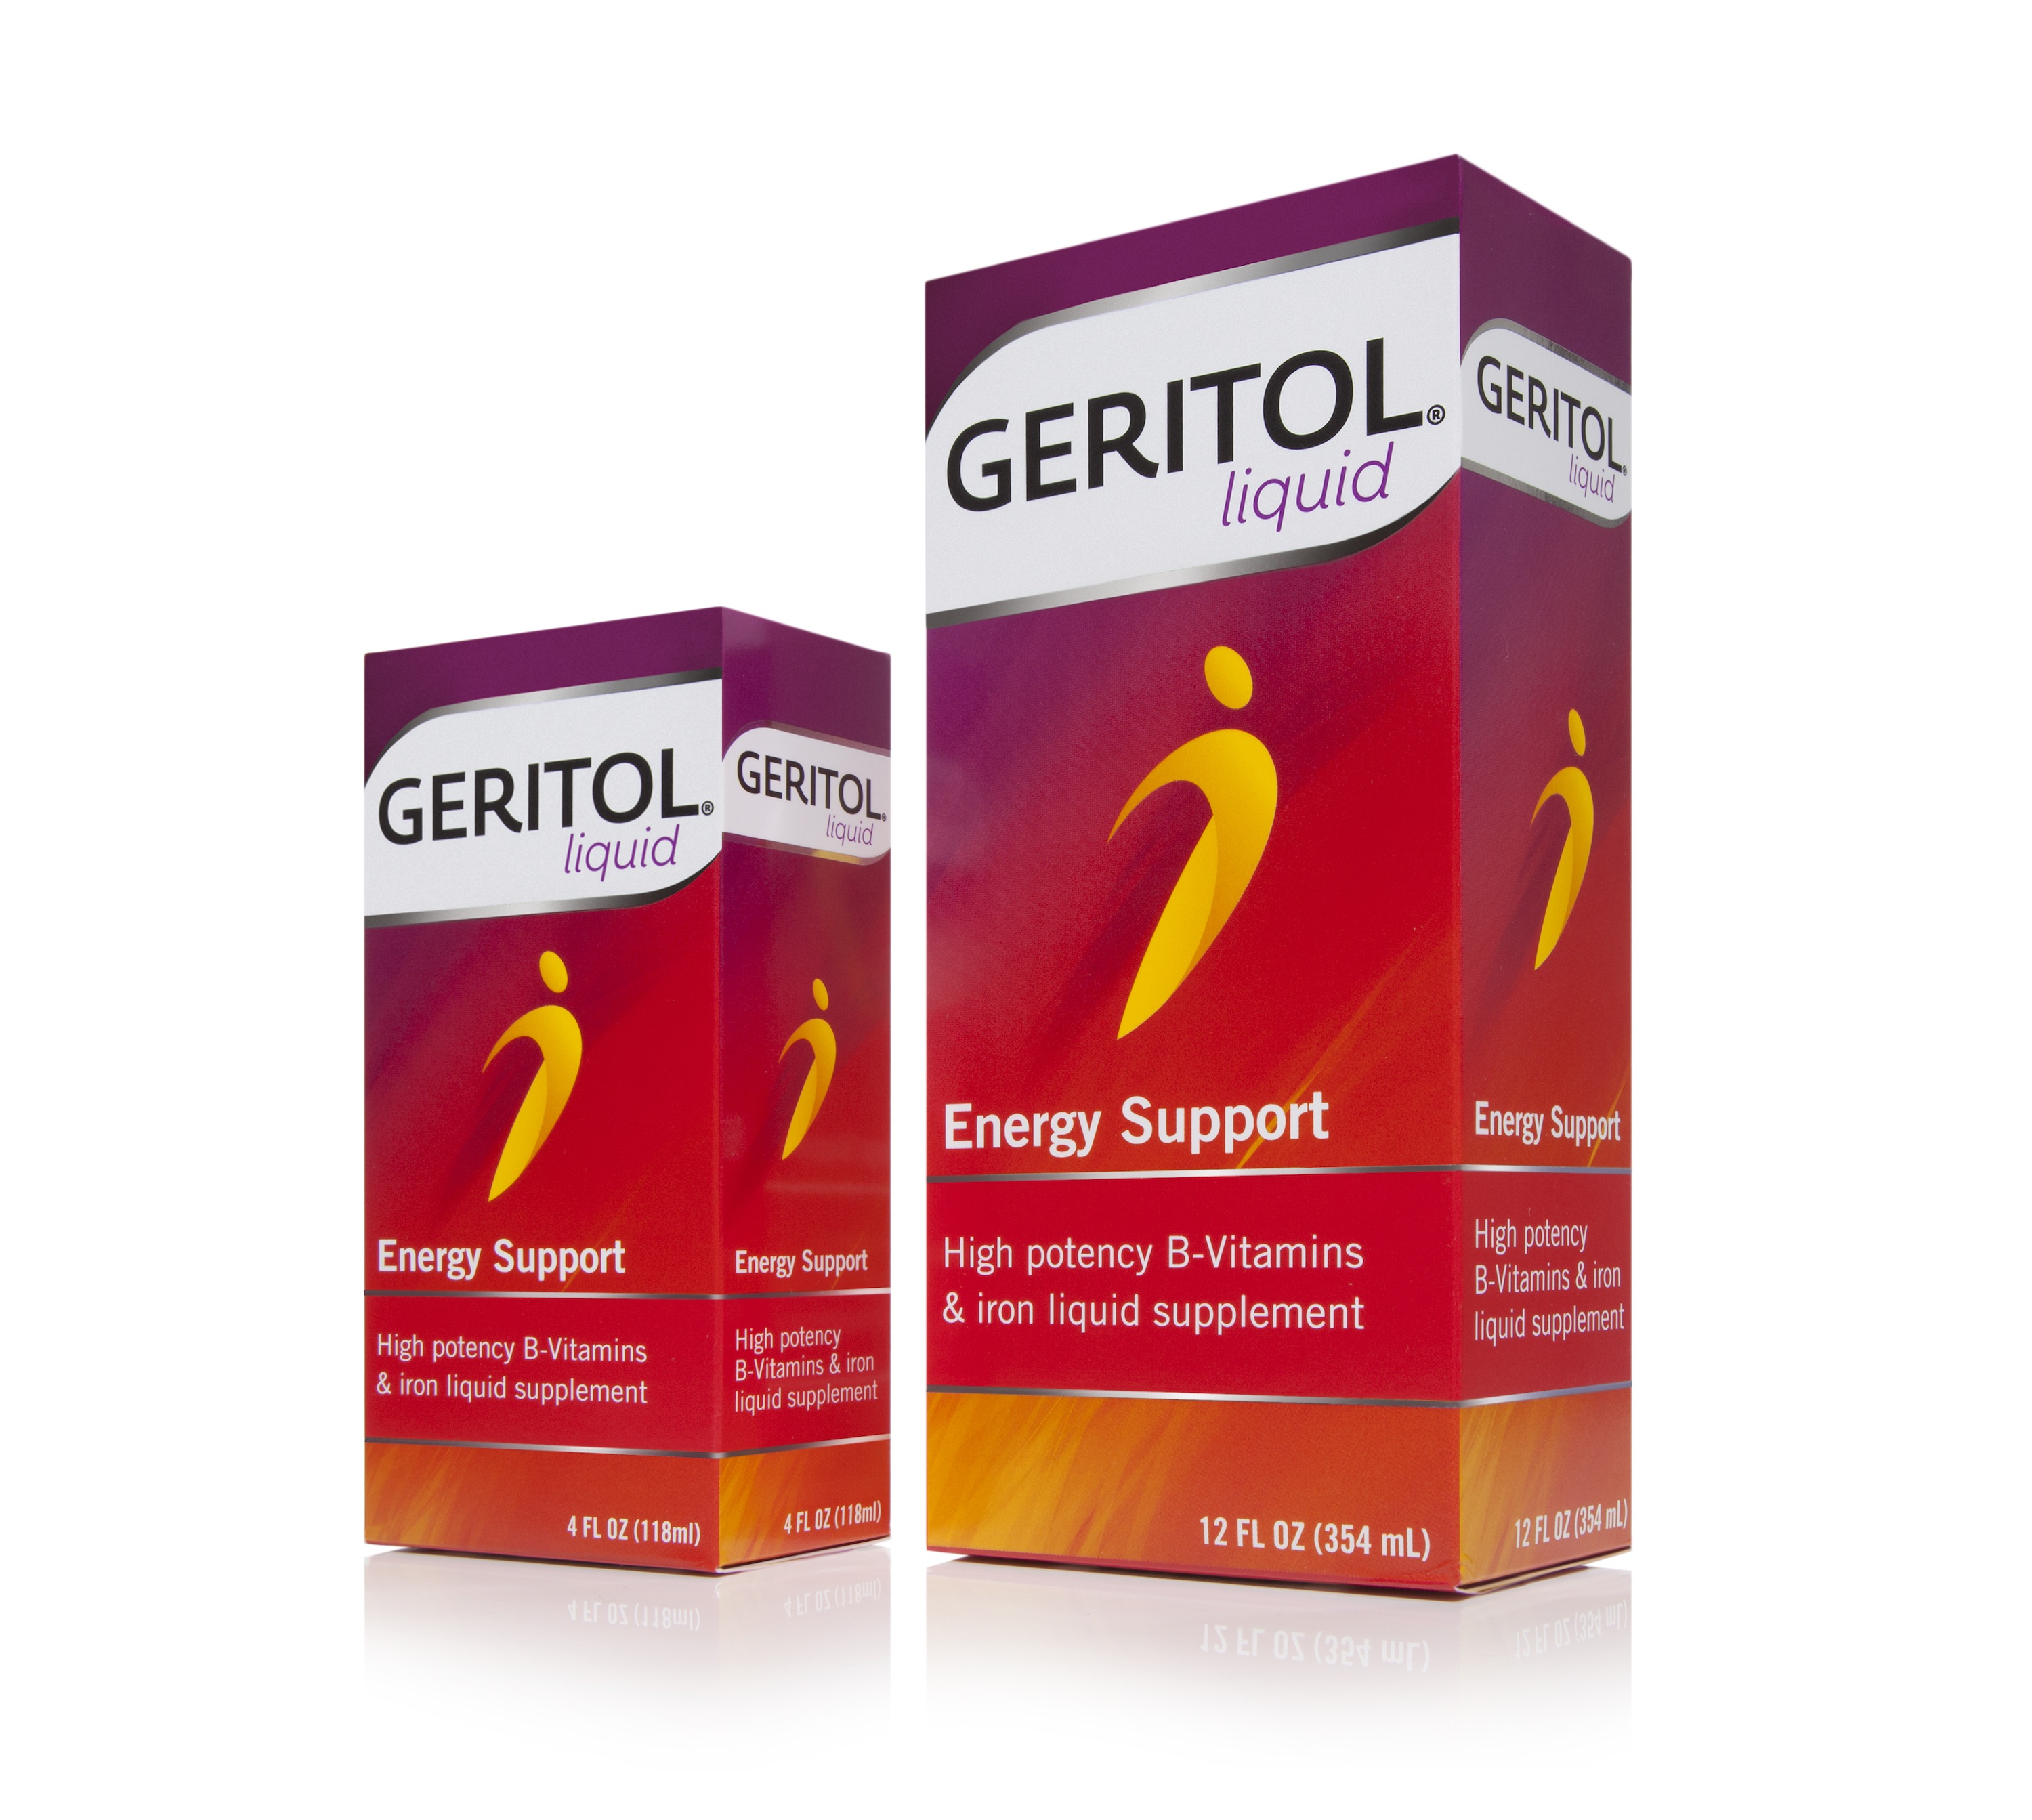 Geritol liquid